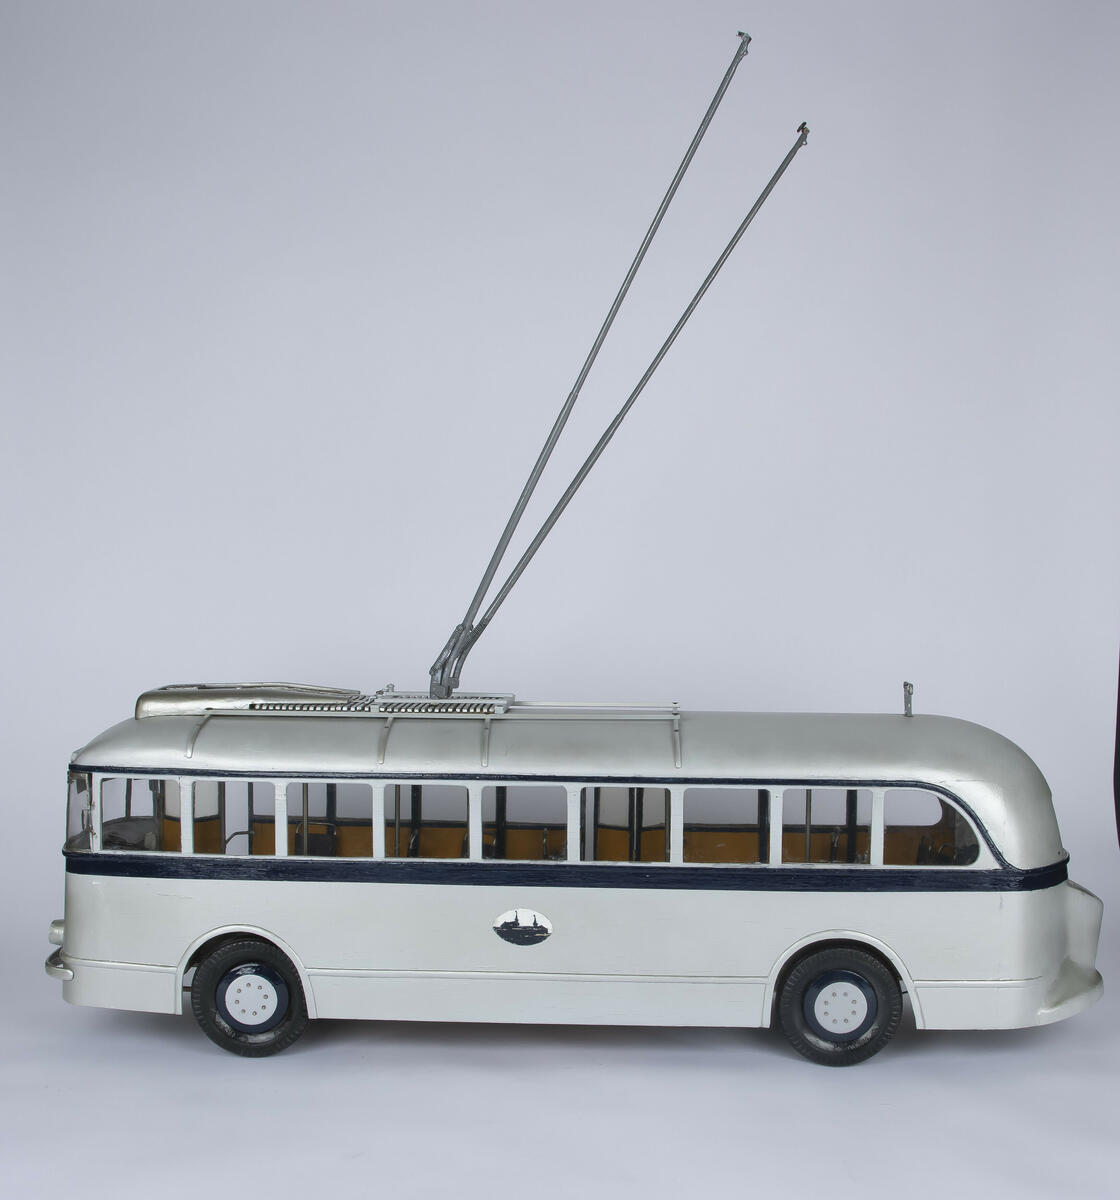 Tremodell av trolleybuss A-15700 med fungerende hjul og inngangs- og utgangsdører. Modellen er farget sølv med en mørk blå stripe som går rundt hele modellen langs midten, samt andre dekorative elementer. Modellen har to fungerendee fjærbelastede trolleystenger/strømavtagere på taket og kroker som stengene kan hektes på på bakre del av taket til bruk hvis bussen må taues. Interiøret består av okergule vegger og enkeltseter i en brun farge.